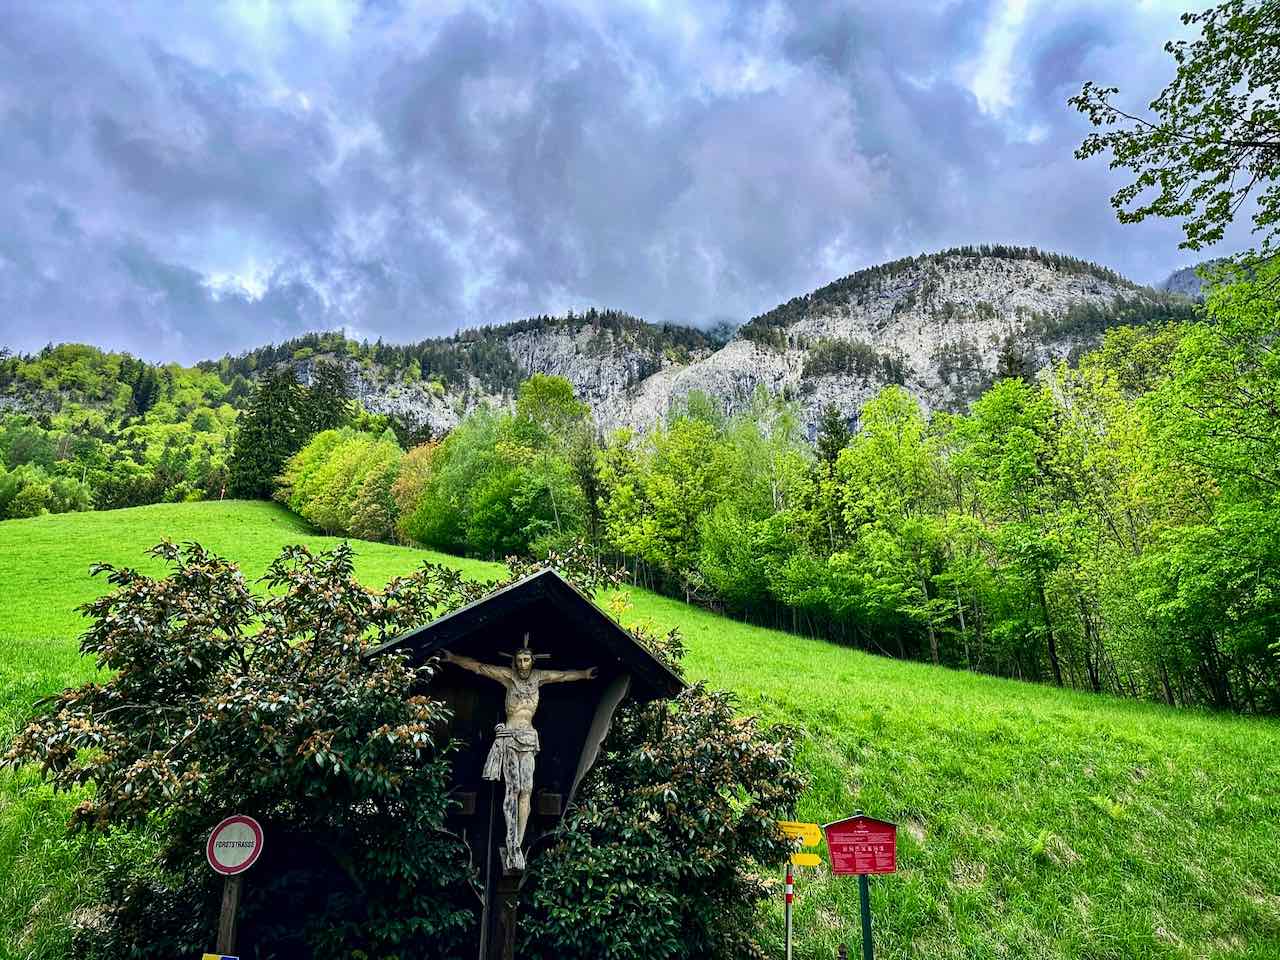 Landschaftsaufnahme des Tiroler Silberpfad in der Silberregion Karwendel; Berge im Hintergrund